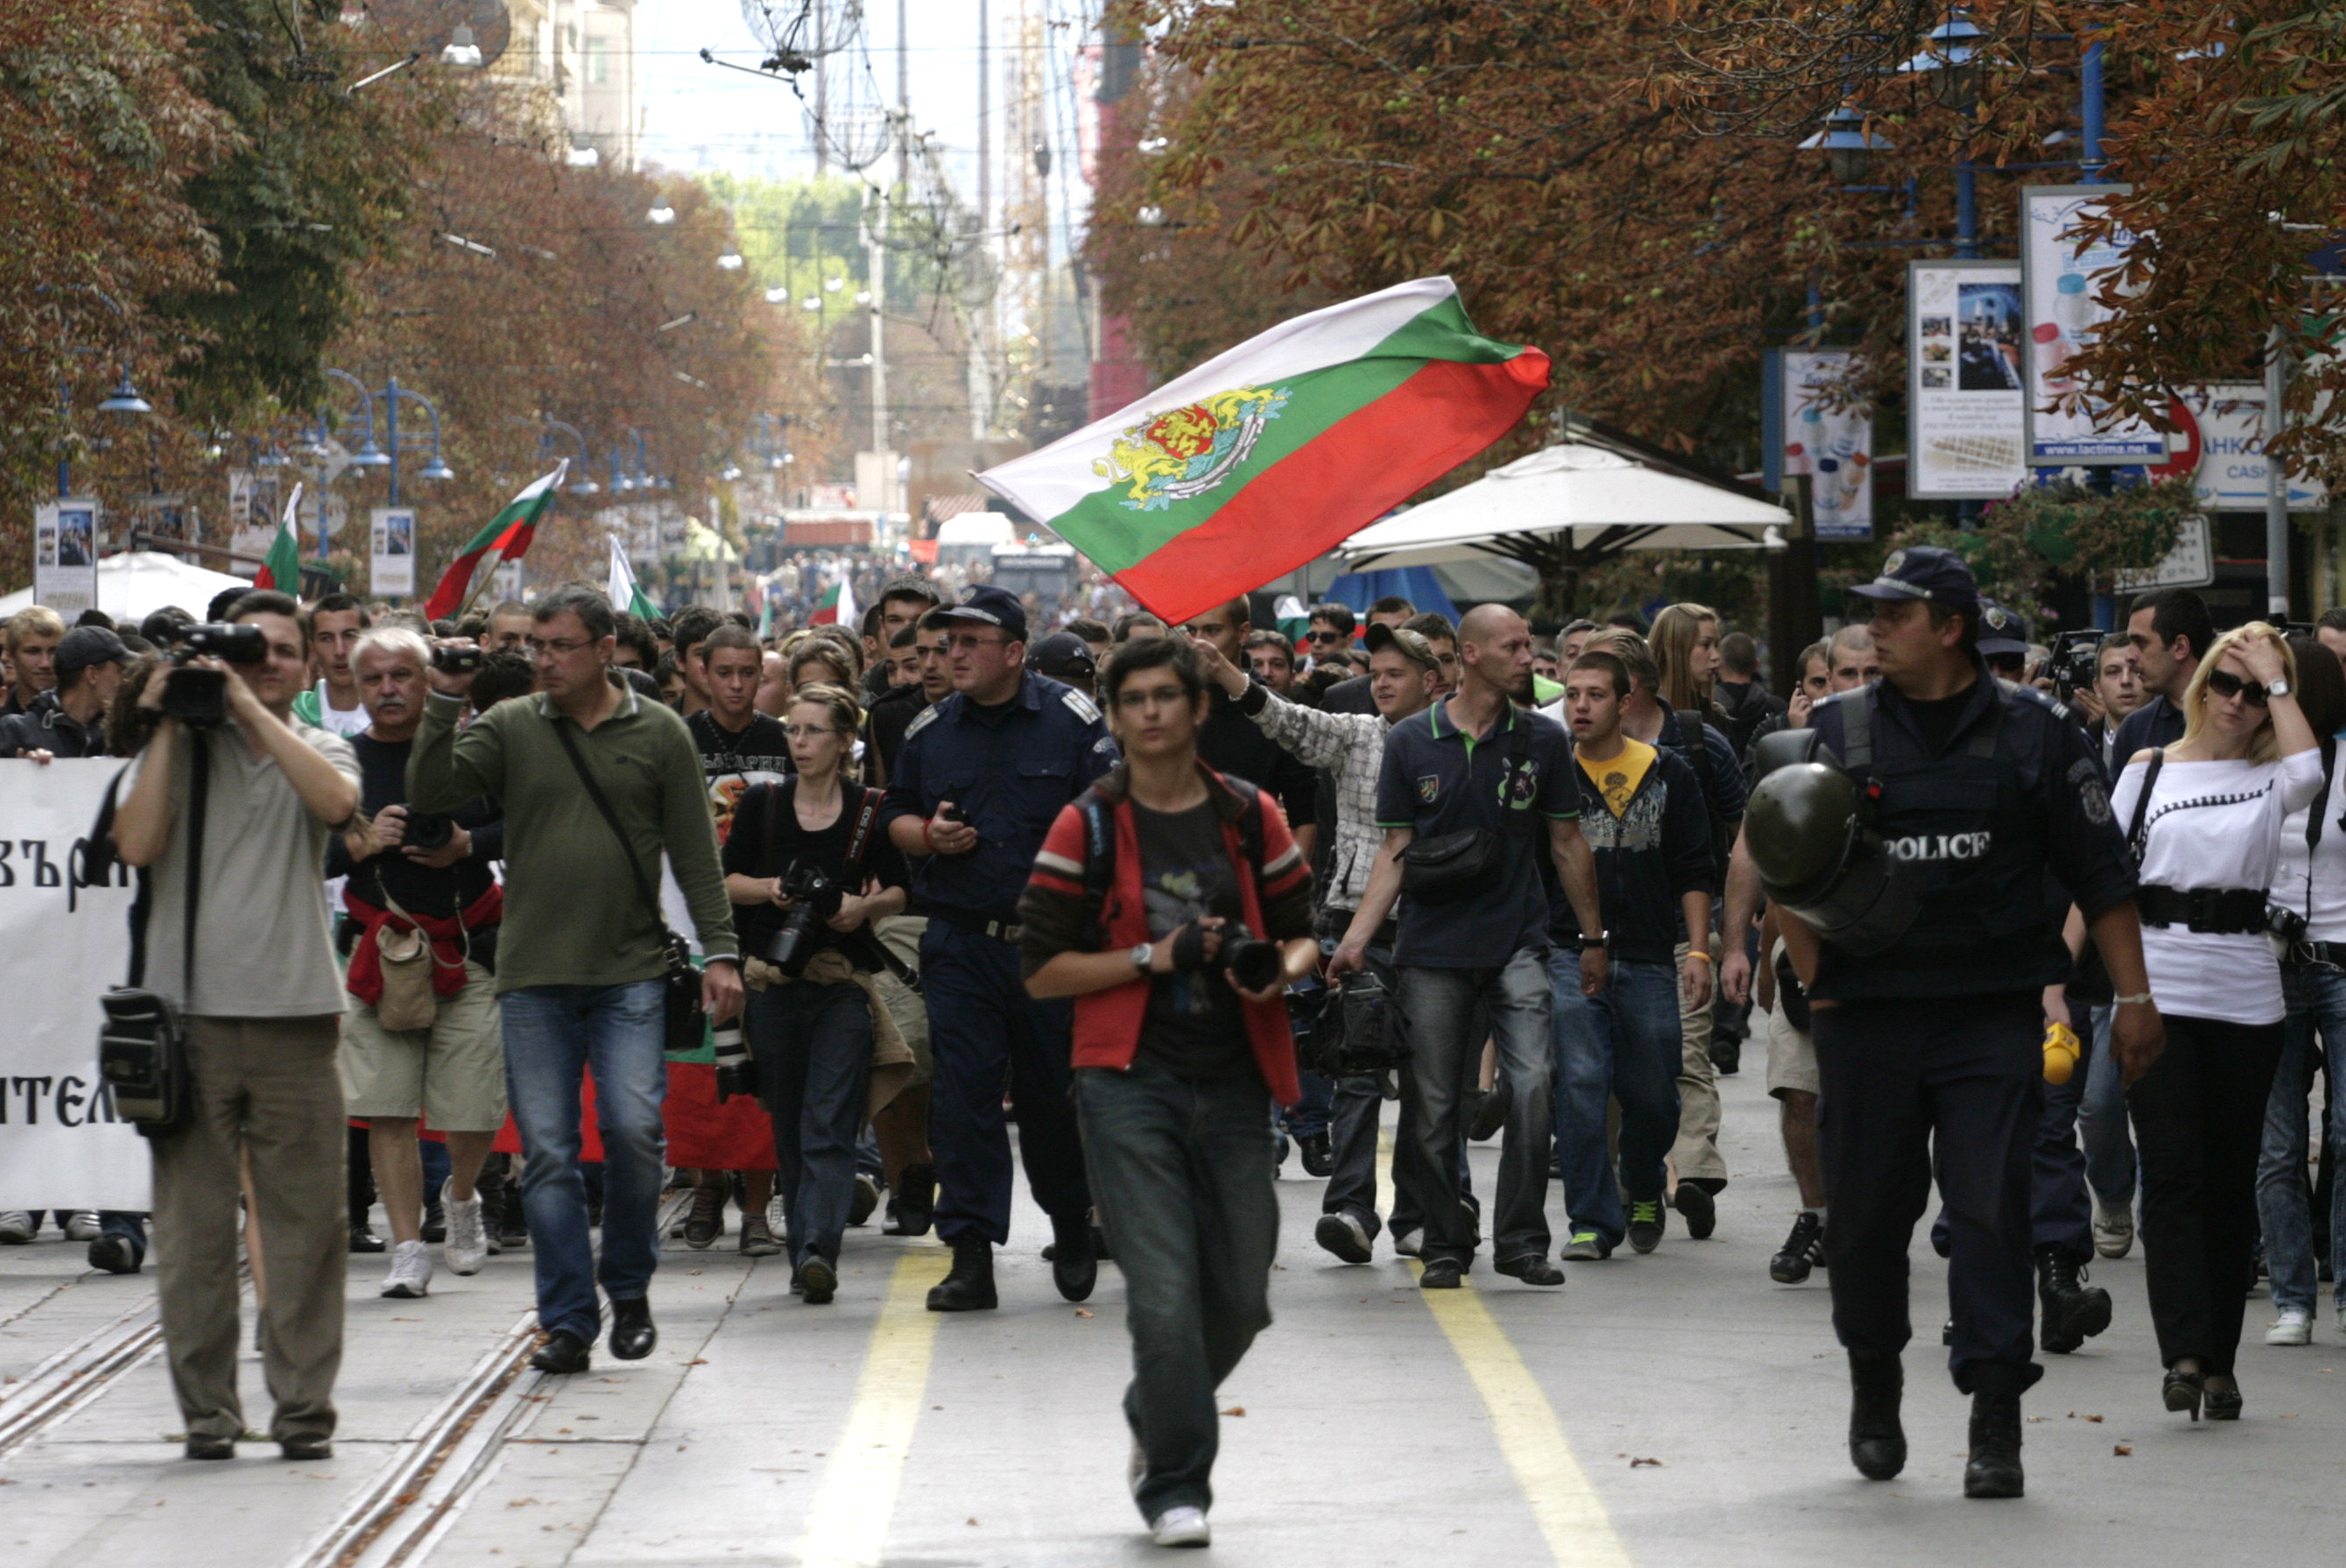 Според организаторите на шествието, на него са присъствали около 2000 души